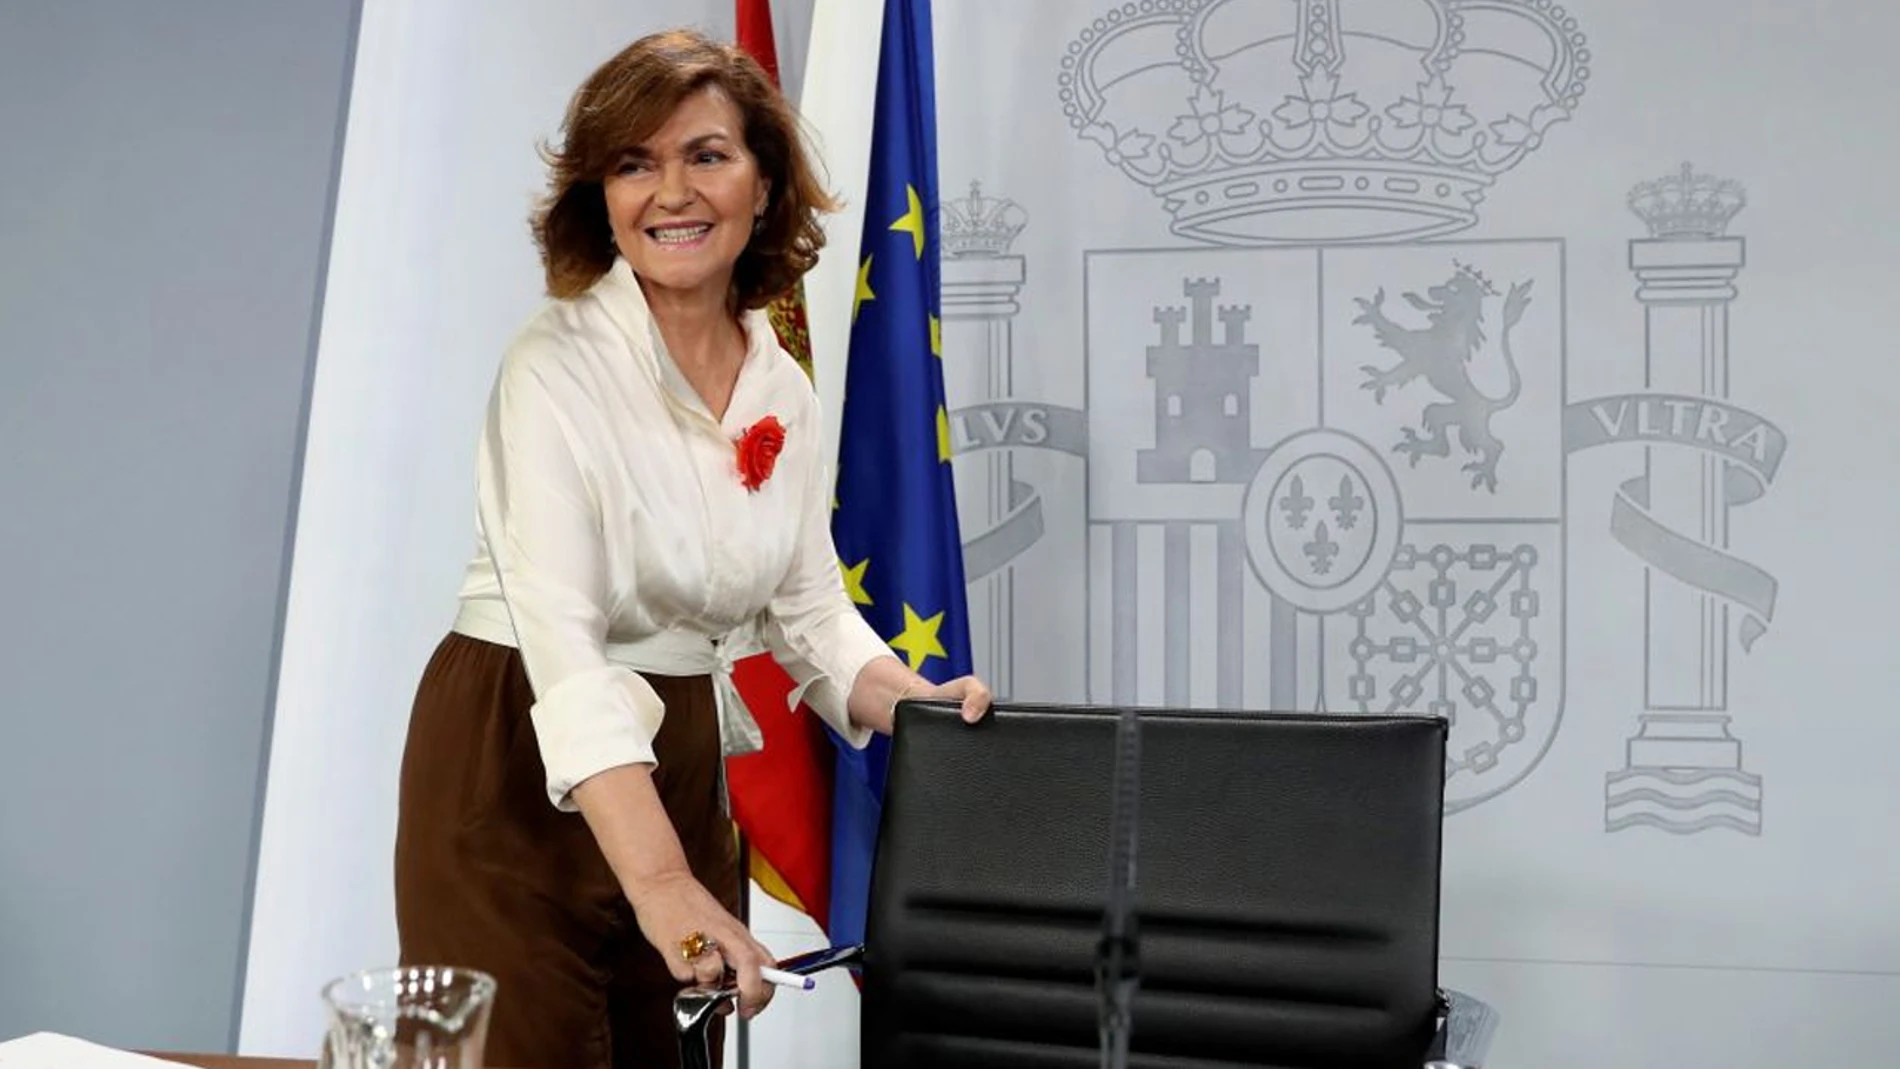 laSexta Noticias 14:00 (26-07-19) Carmen Calvo: "Unidas Podemos sola ha rechazado un gobierno de coalición. Está rechazado y rechazado queda"